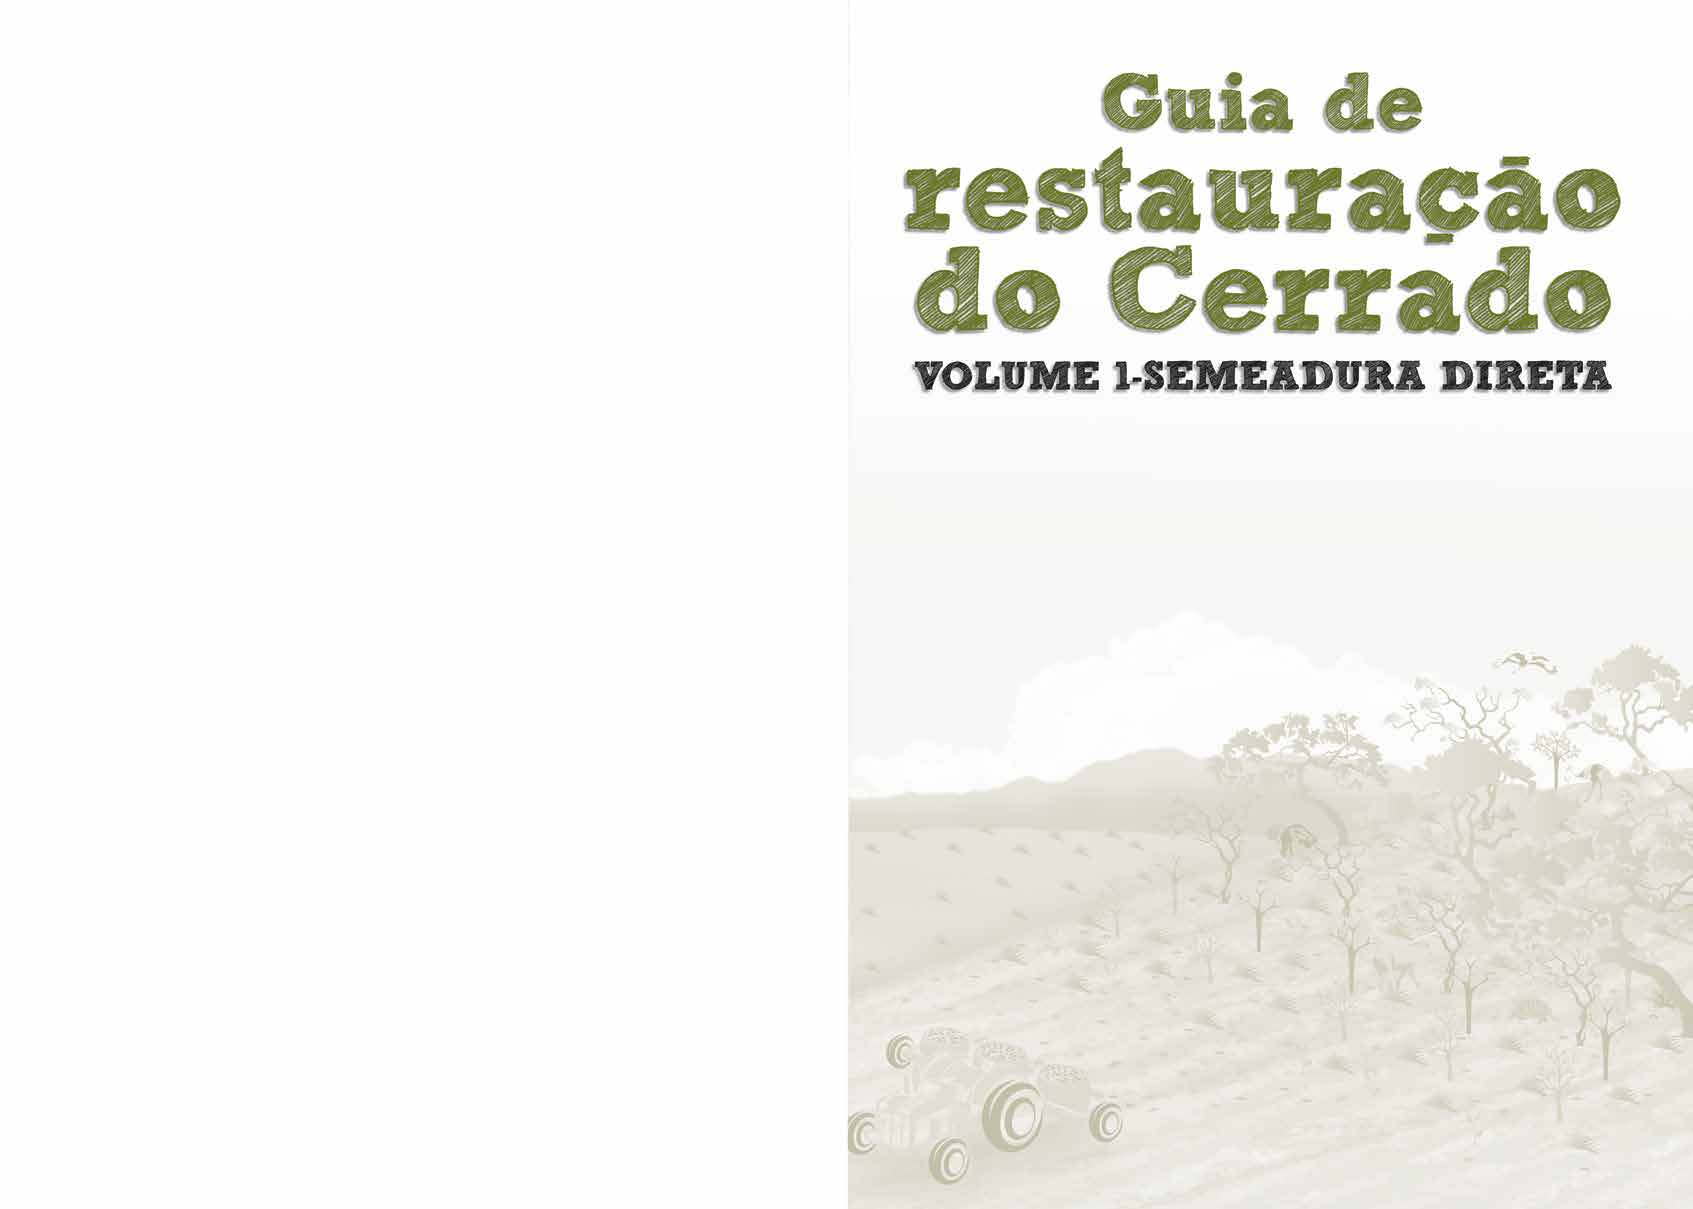 Autores Alexandre Bonesso Sampaio (Analista Ambiental do CECAT/ICMBio) - Coordenação Daniel Luis Mascia Vieira (Pesquisador da Embrapa Recursos Genéticos e Biotecnologia) Alba Orli de Oliveira